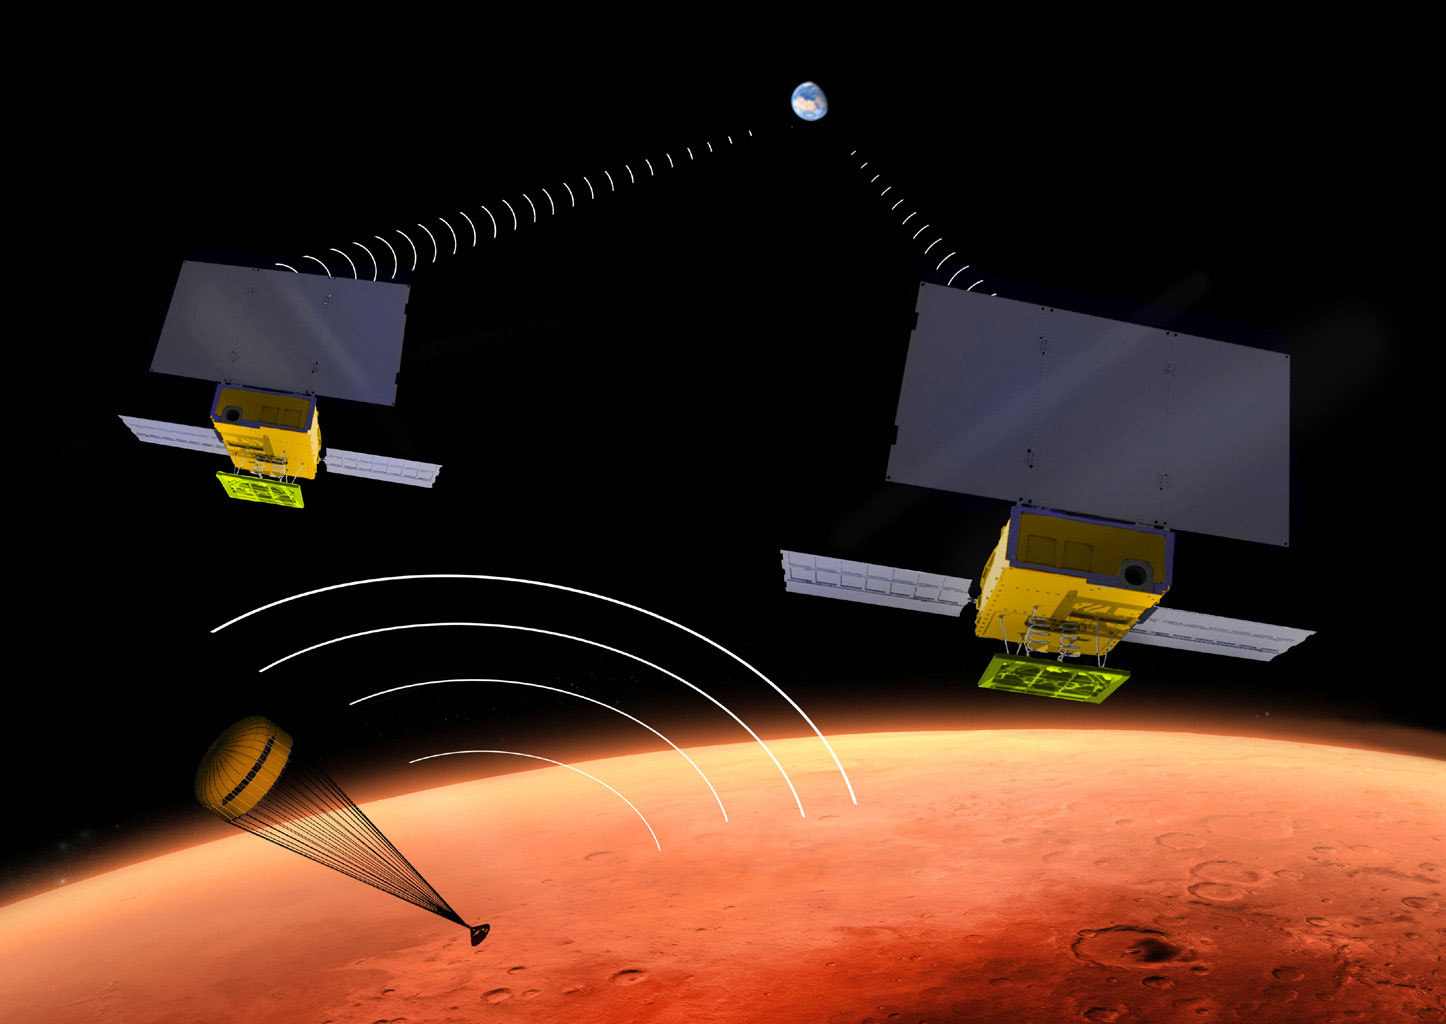 Les CubeSat pourraient être utilisés dans des situations de plus en plus audacieuses, comme c'est le cas avec la mission InSight de la Nasa. Un progrès rendu notamment possible grâce à la miniaturisation des instruments scientifiques et des servitudes des satellites (c'est-à-dire leurs éléments de navigation et de structure). © JPL/Nasa